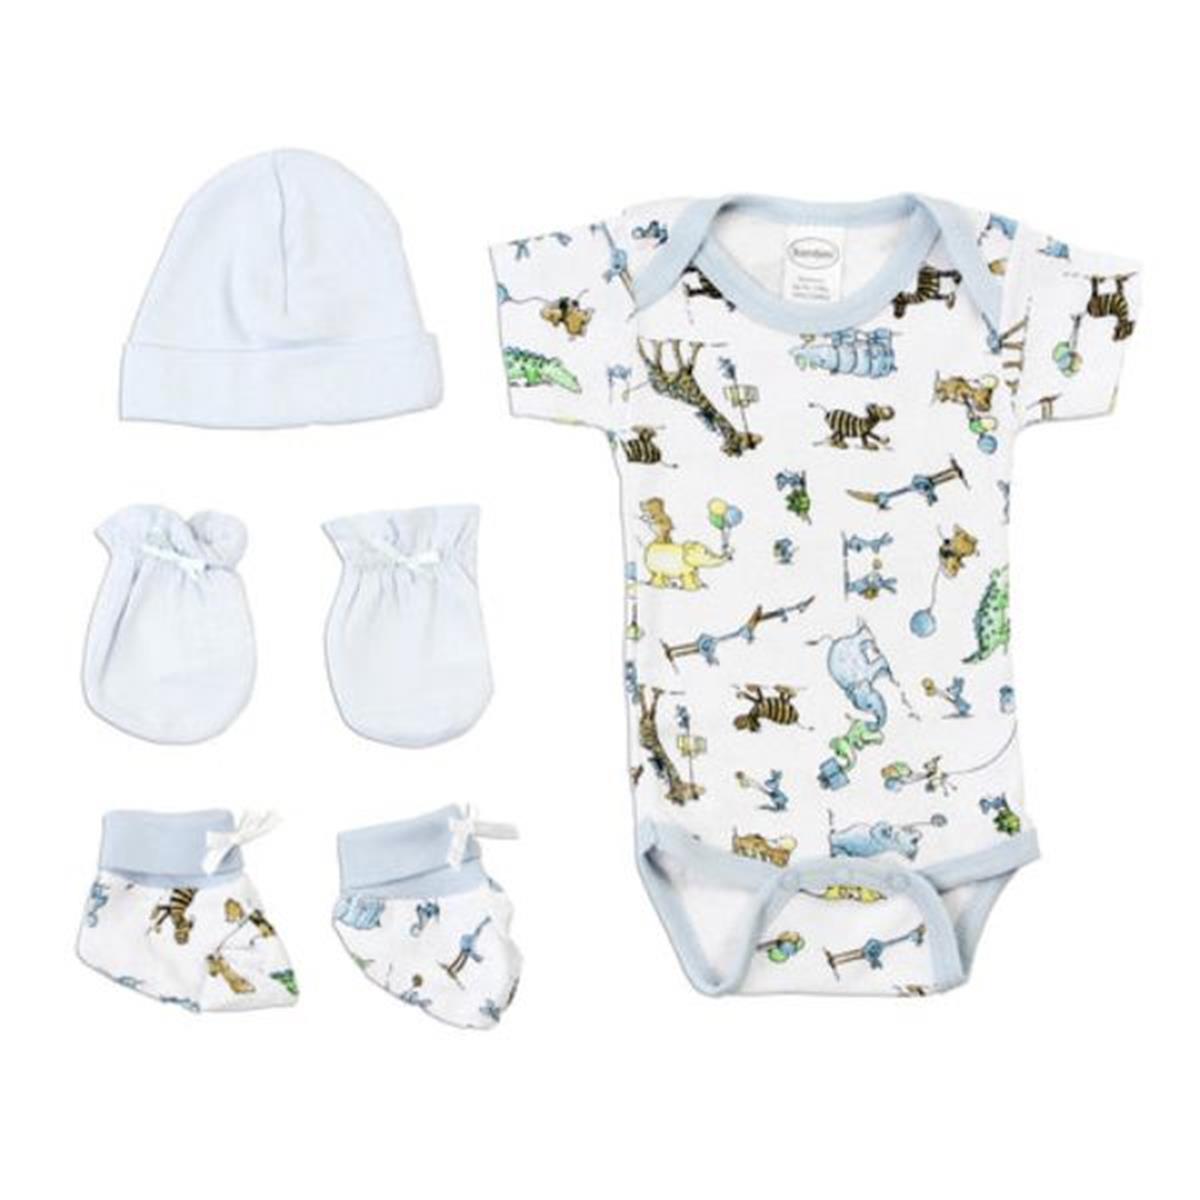 Bambini LS-0074 Newborn Baby Boys Layette Baby Shower Gift Set&#44; White & Yellow - Newborn